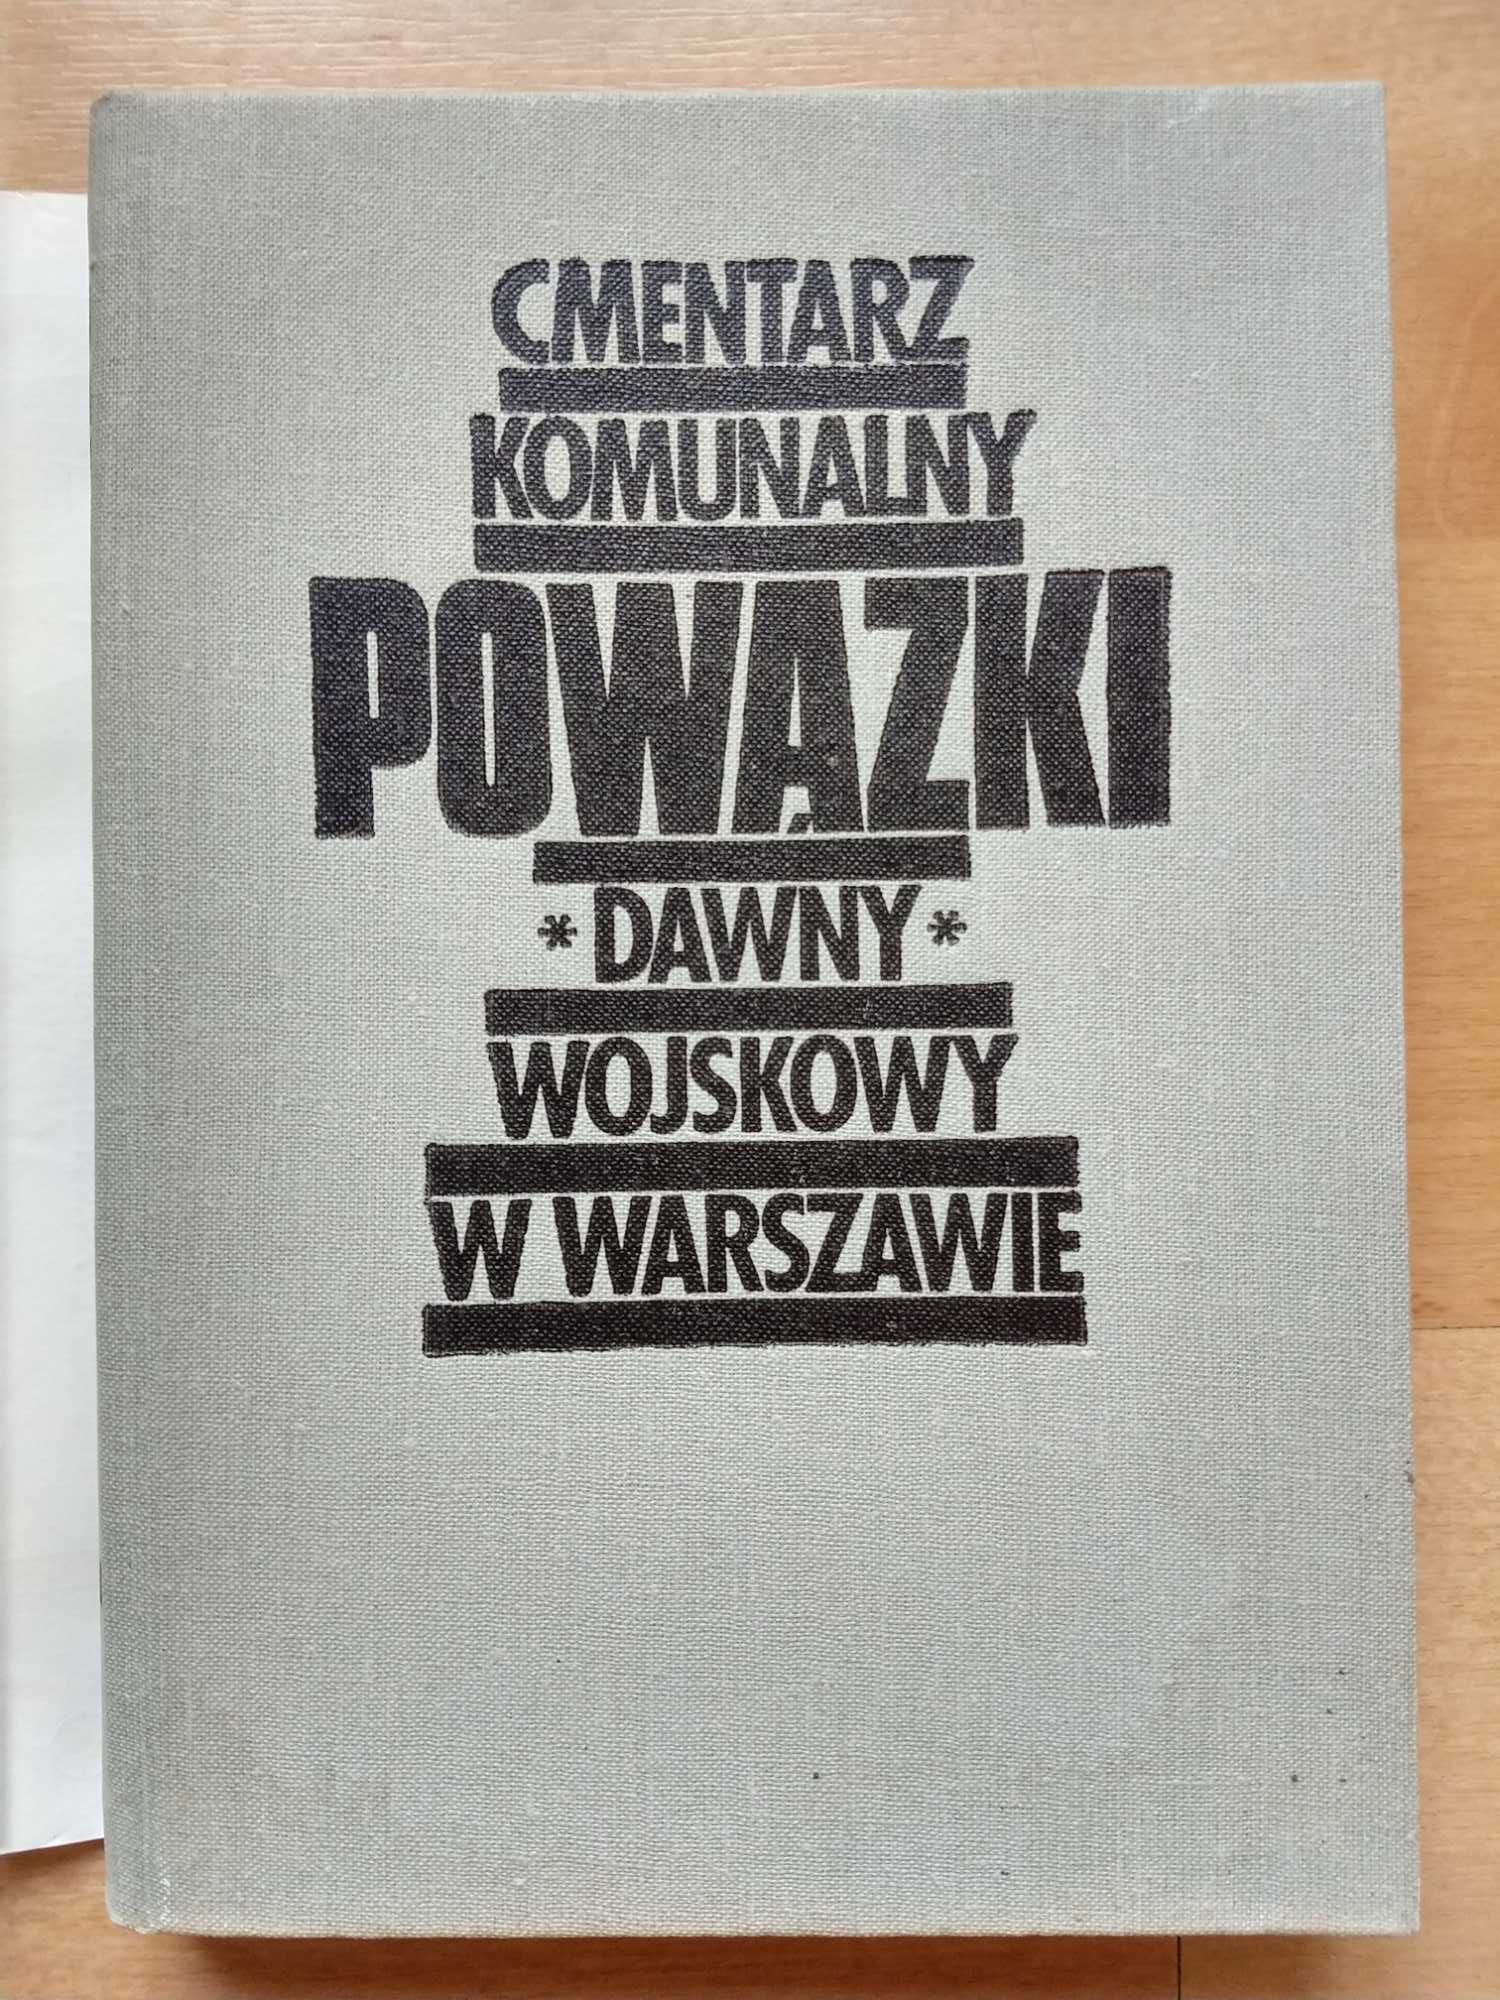 Cmentarz komunalny Powązki dawny wojskowy w Warszawie